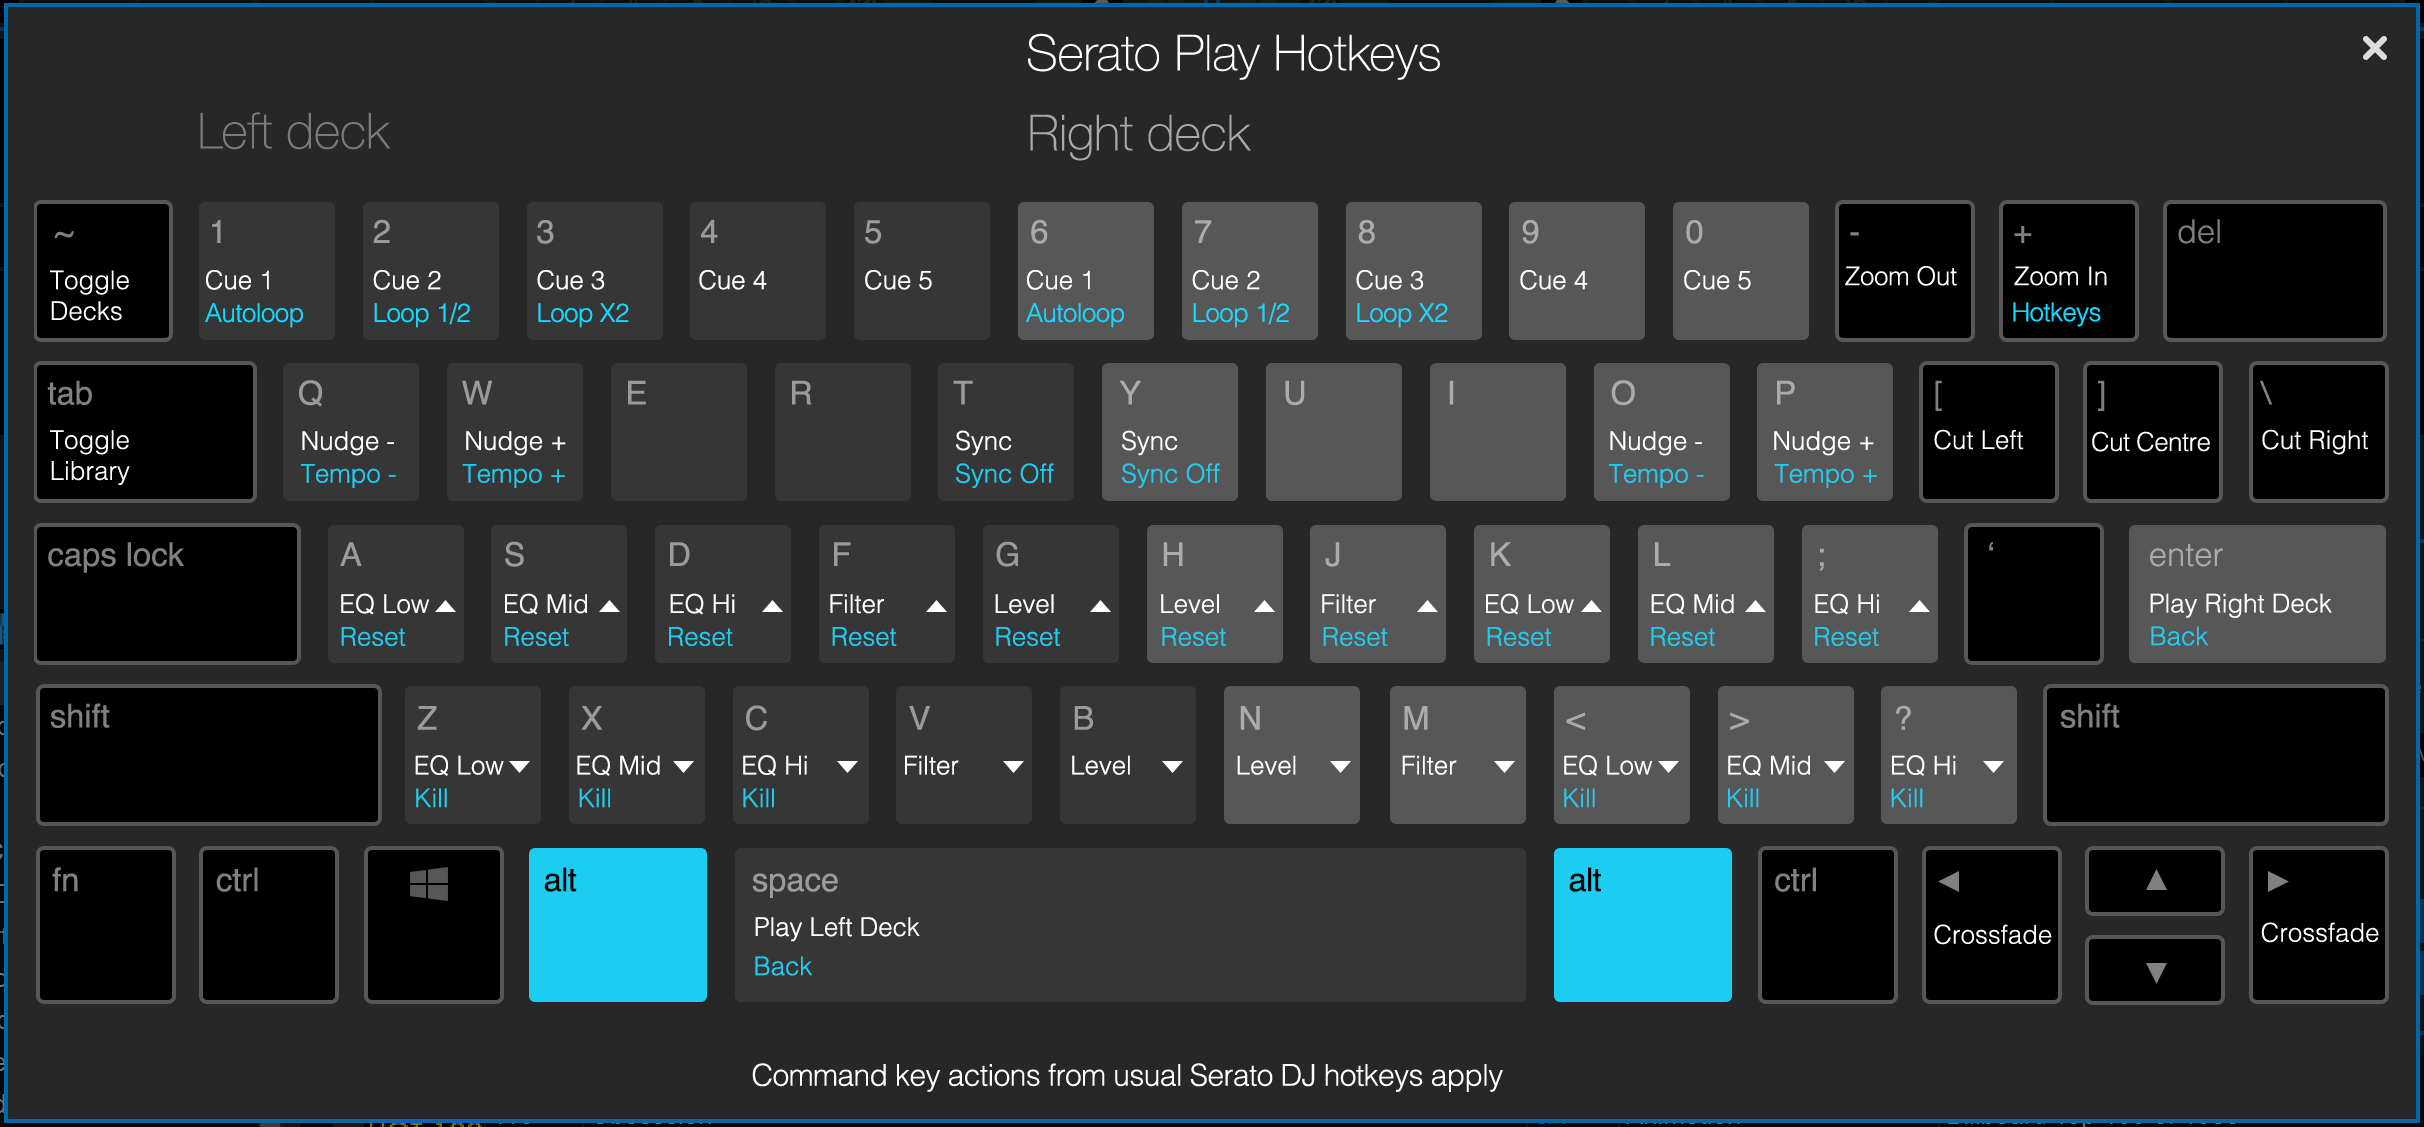 Serato Keyboard Shortcuts Pdf